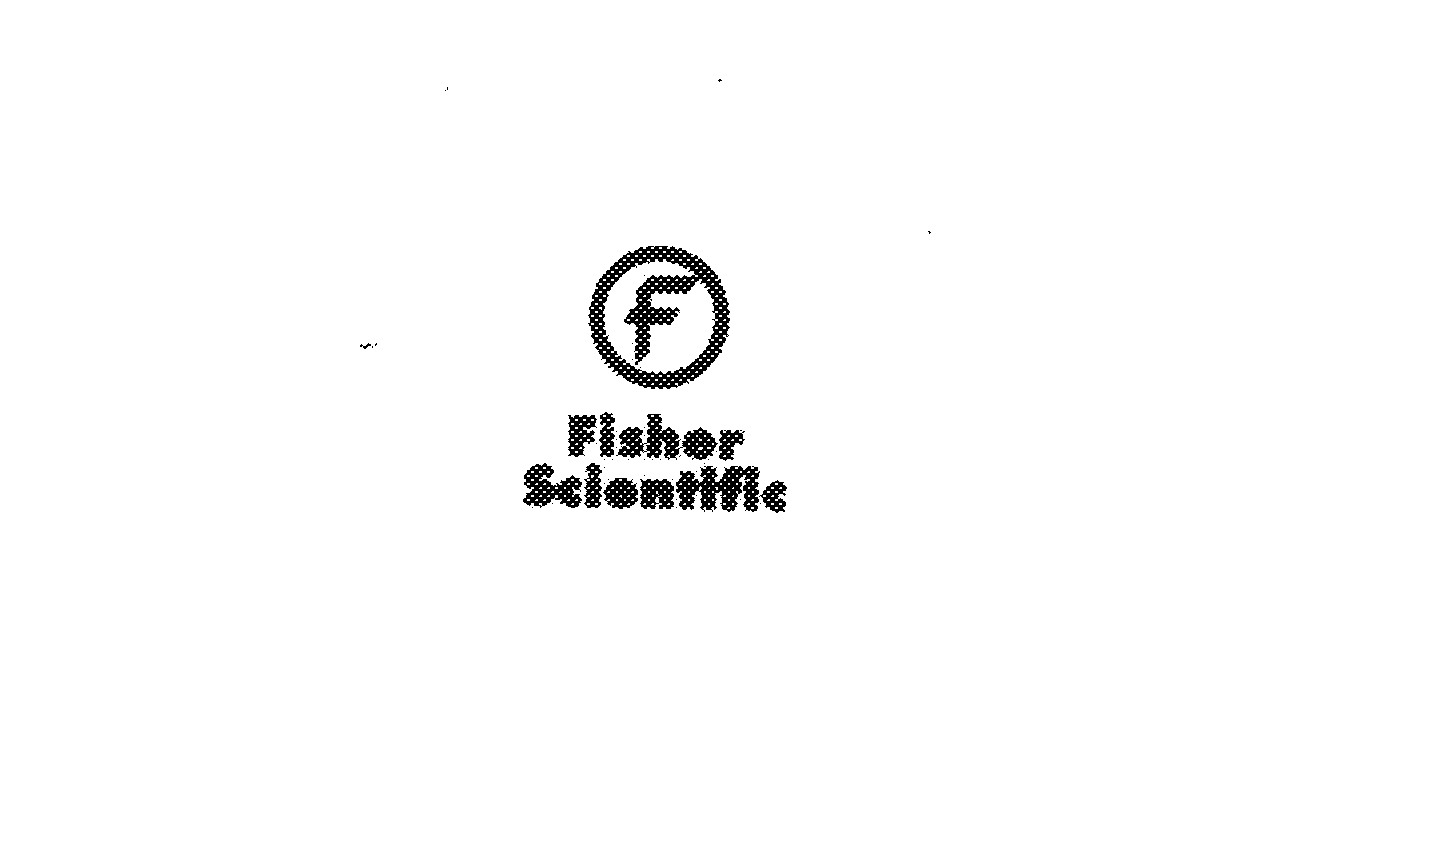 F FISHER SCIENTIFIC